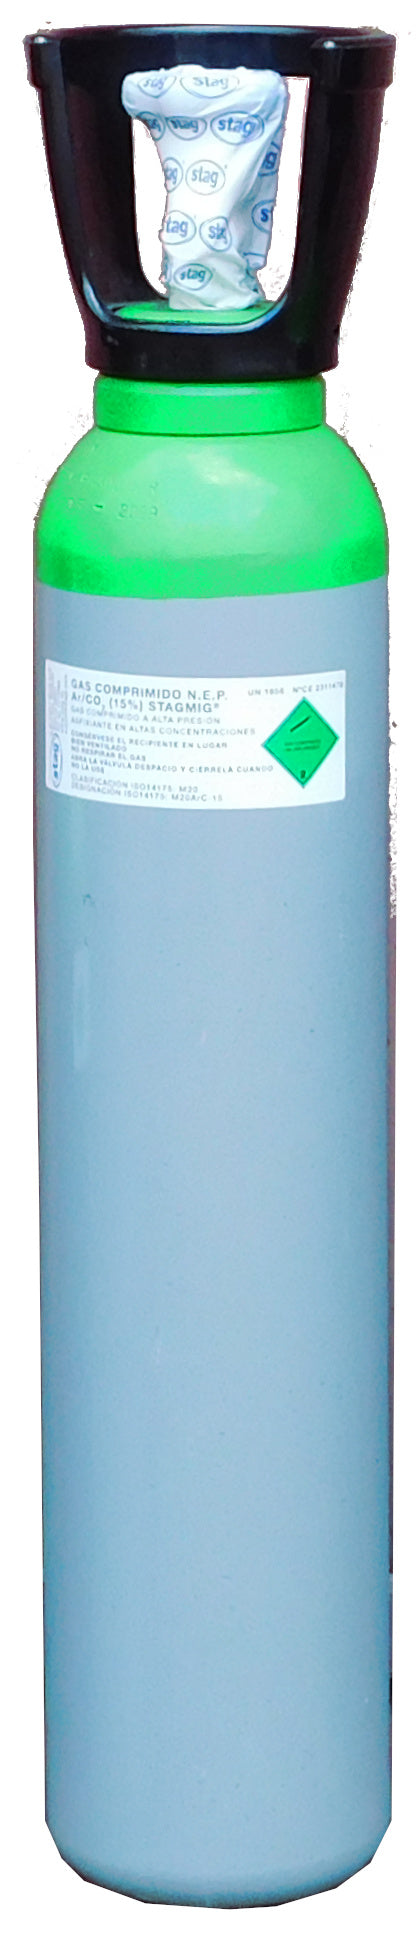 Botella B-7 (7 Litros) cargada con mezcla de gas Argón - CO2 15% comprimido con tulipa